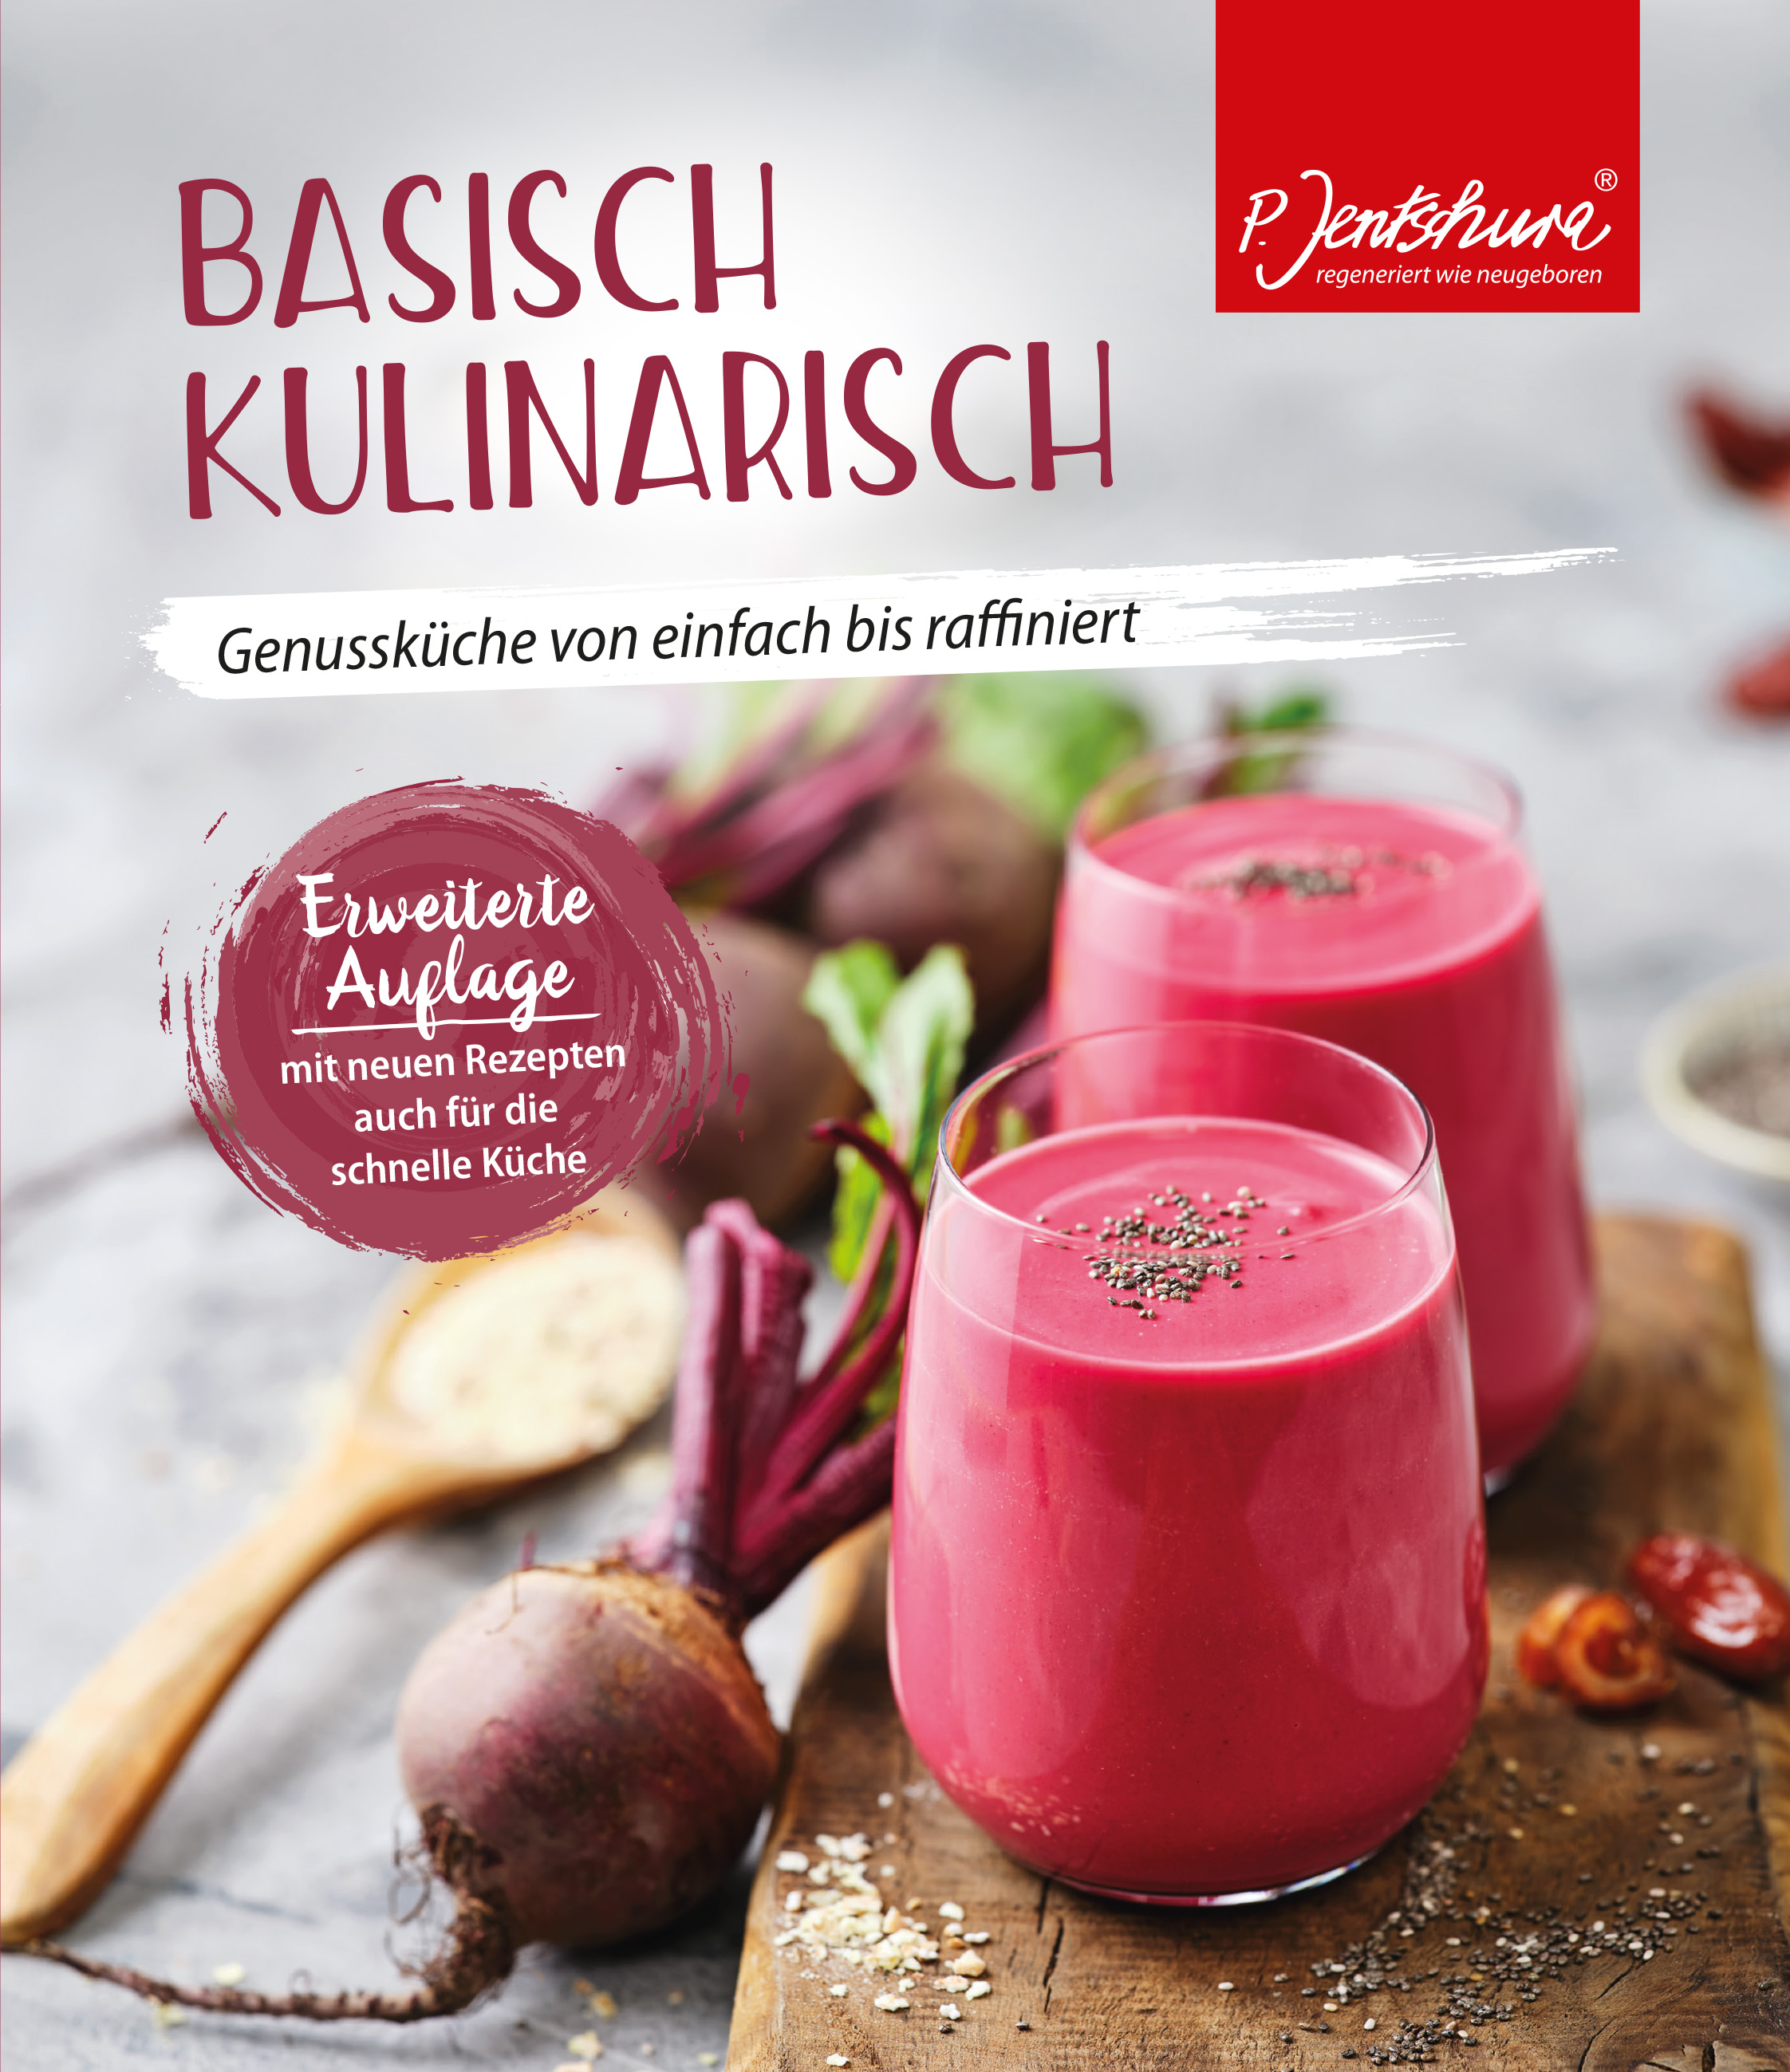 Kochbuch "Basisch kulinarisch"